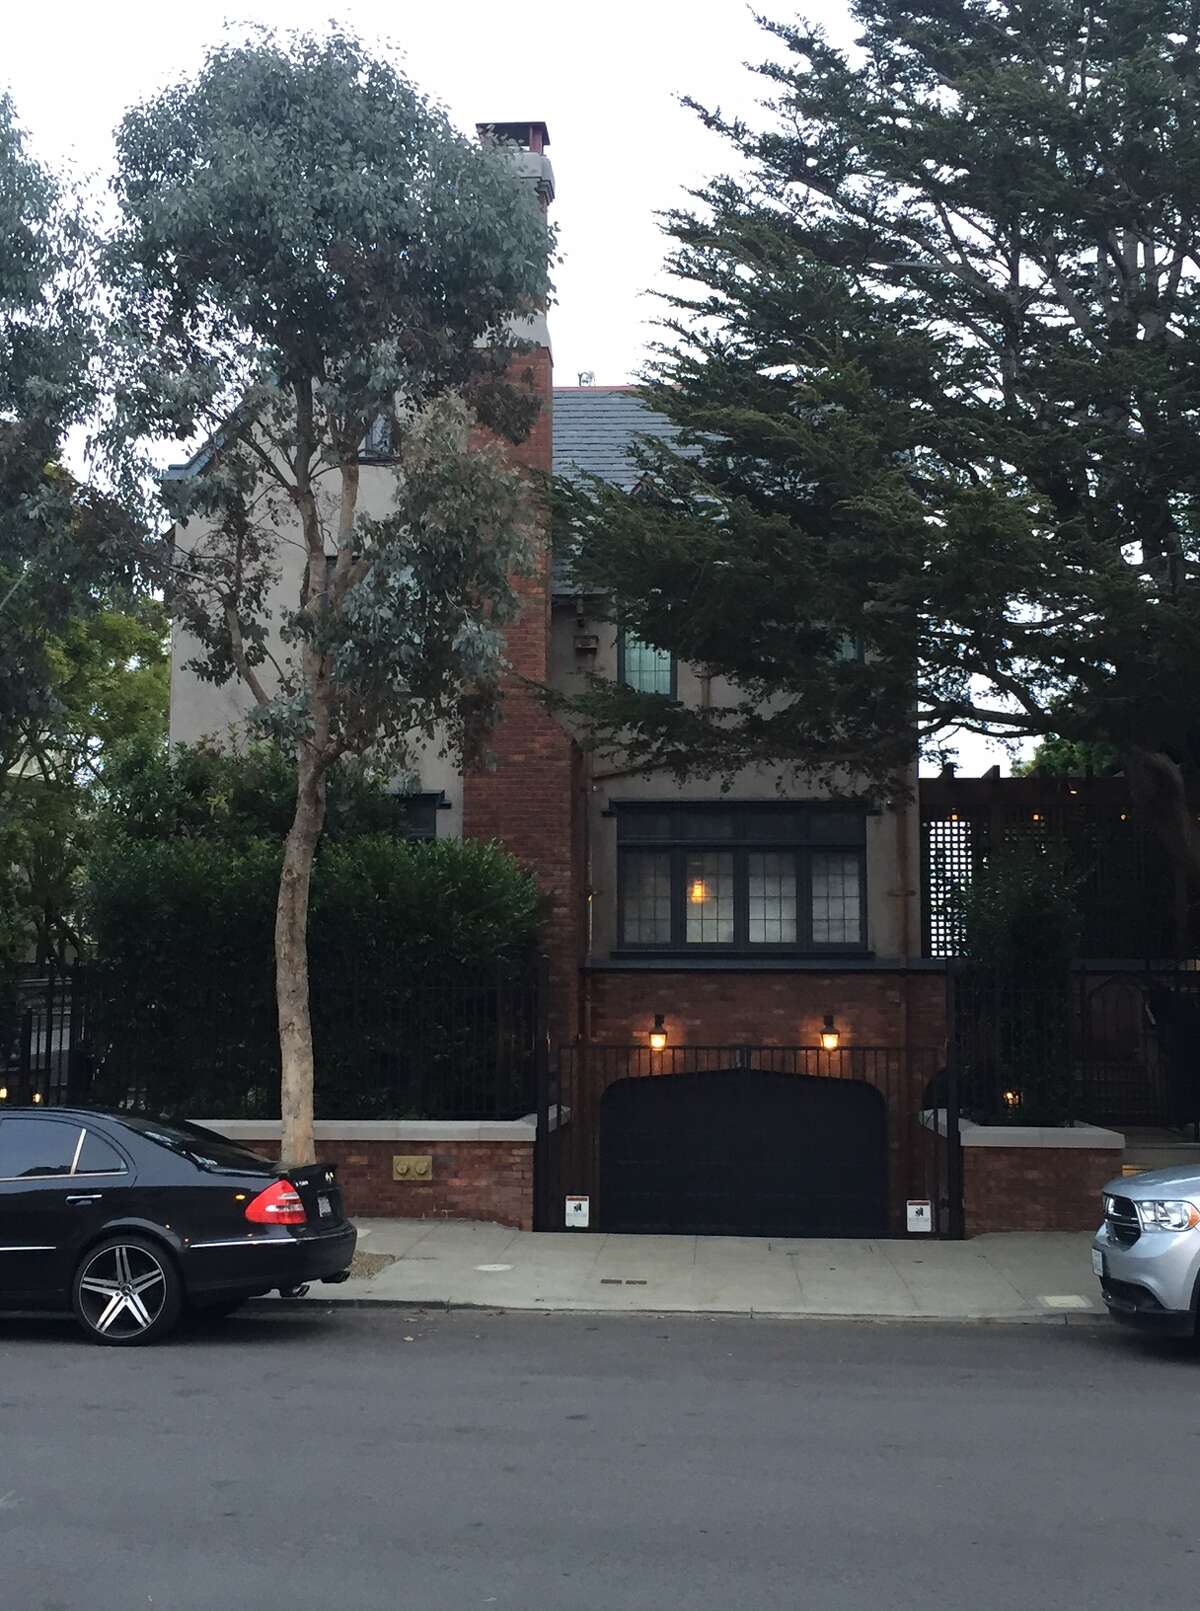 Ο Mark Zuckerberg  πούλησε το σπίτι του στο San Francisco και έτσι οι γείτονες θα σταματήσουν τις καταγγελίες 10